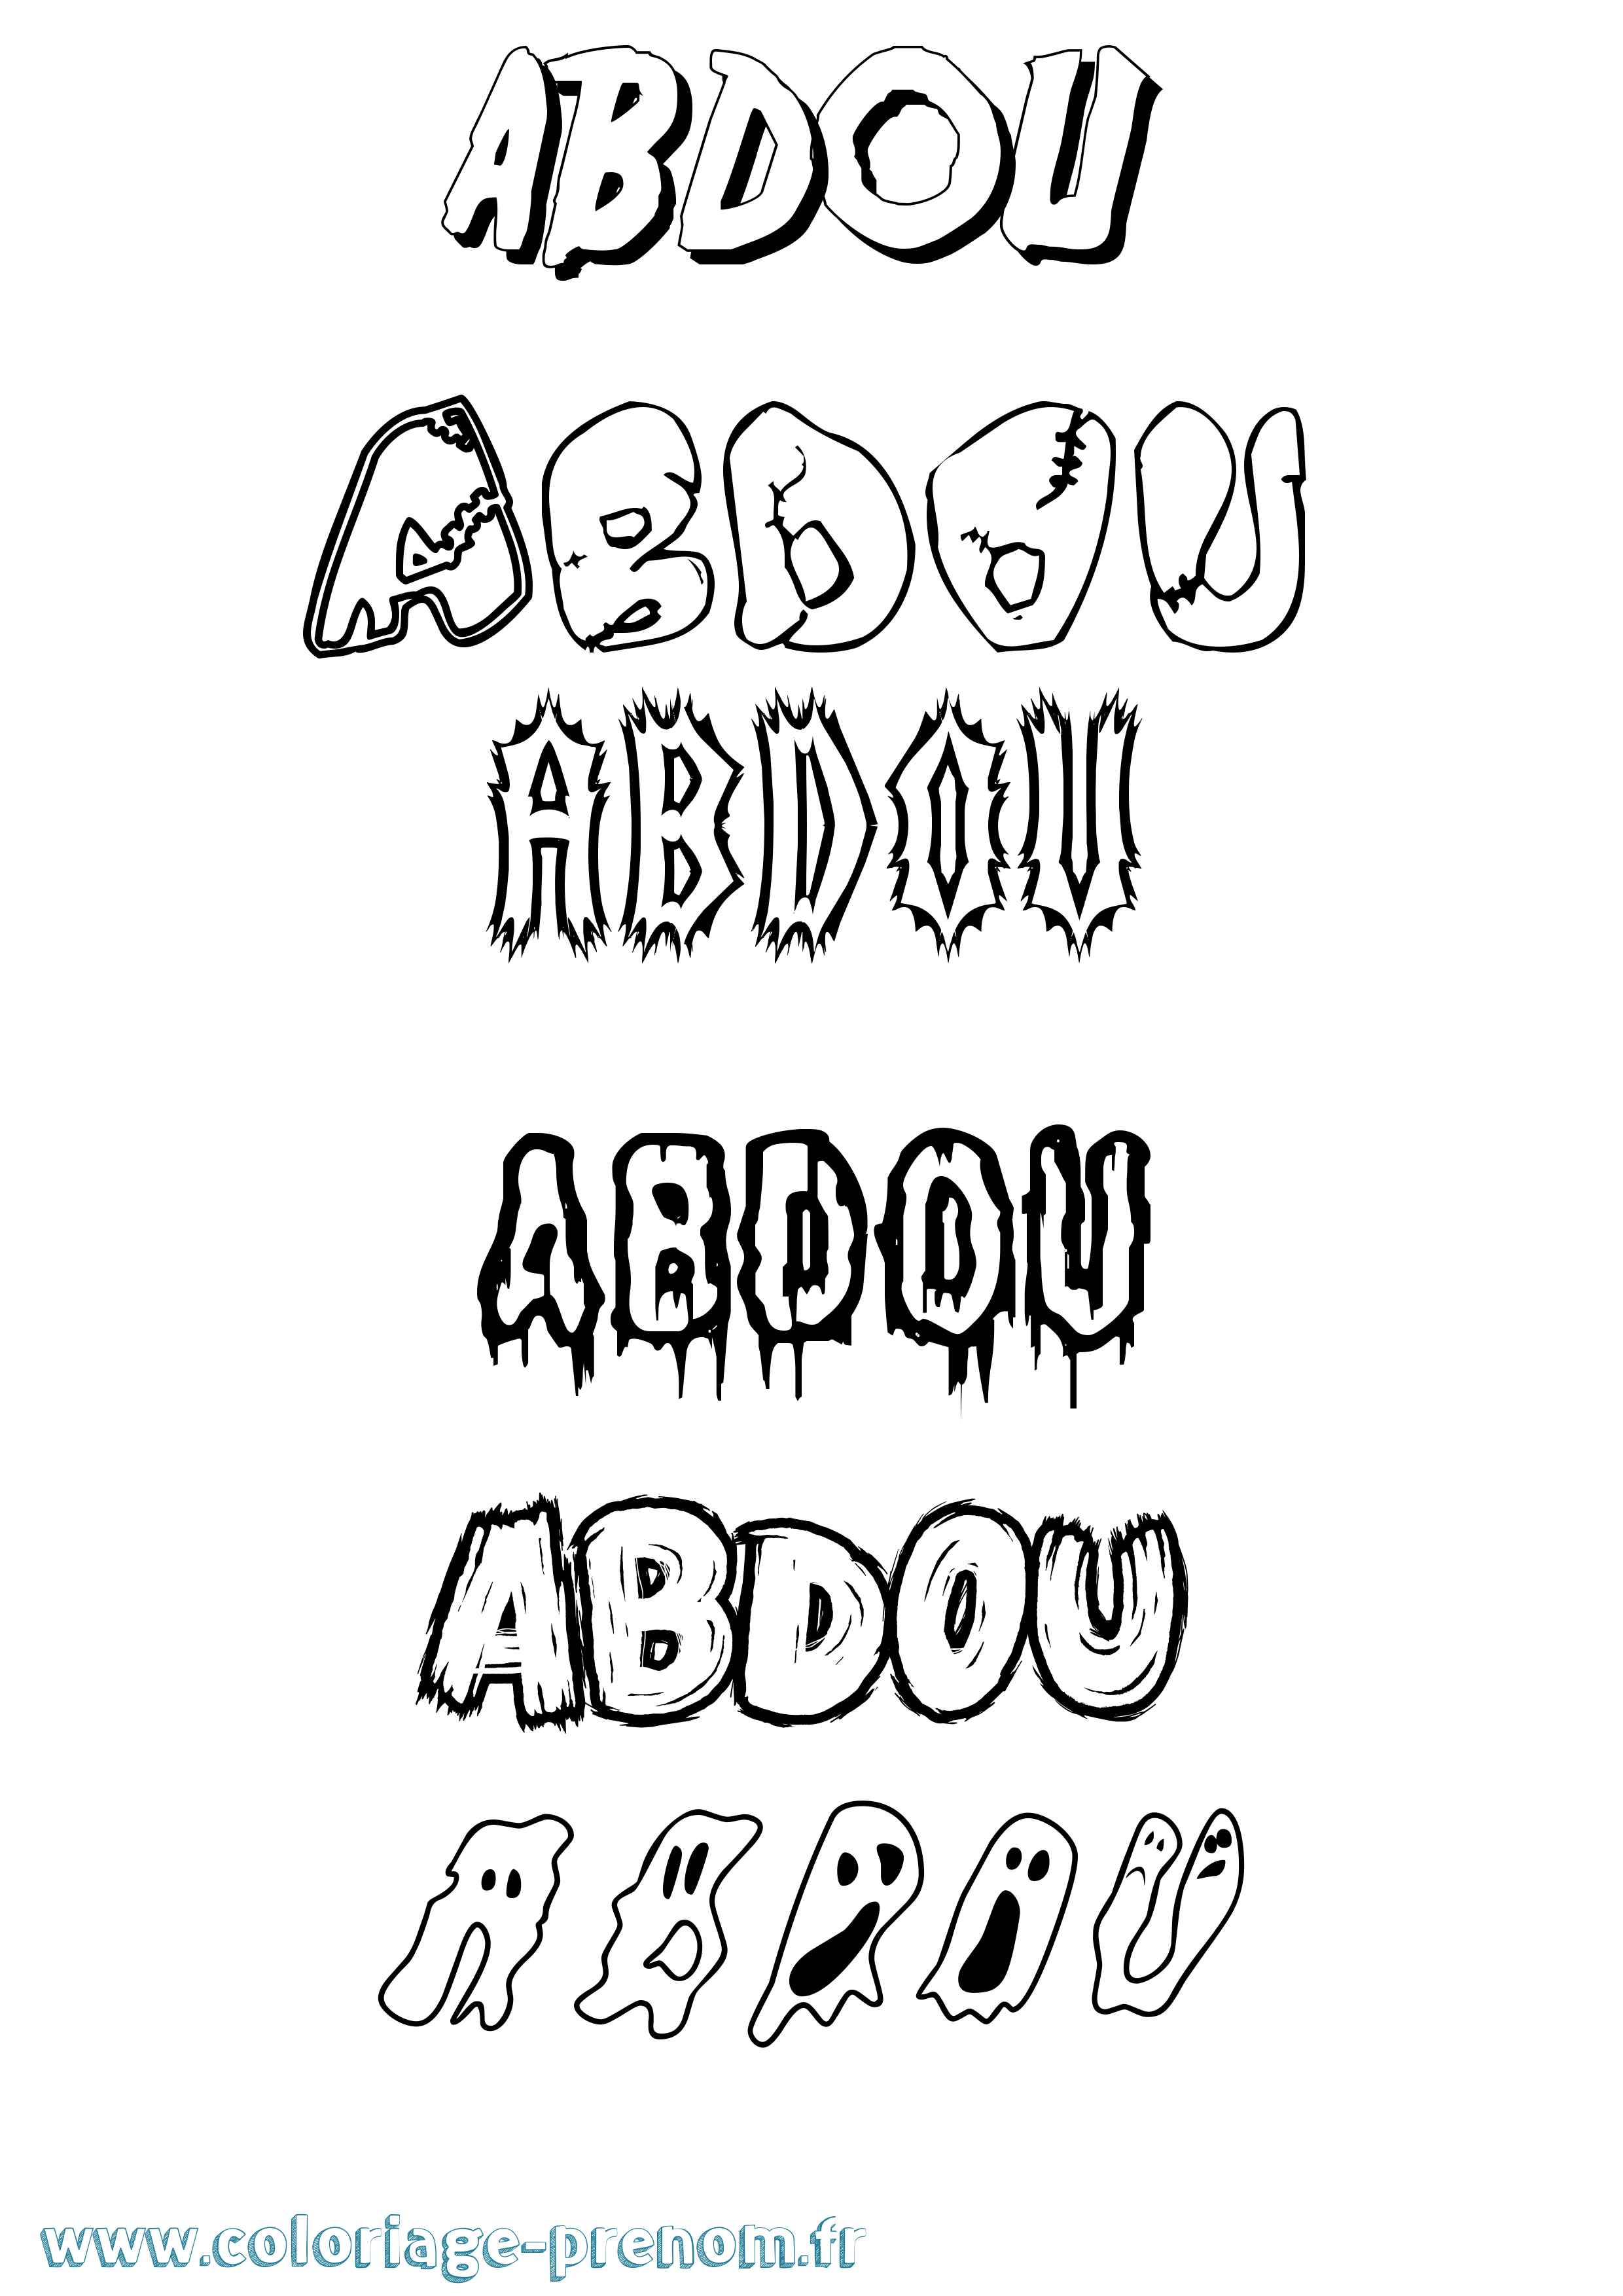 Coloriage prénom Abdou